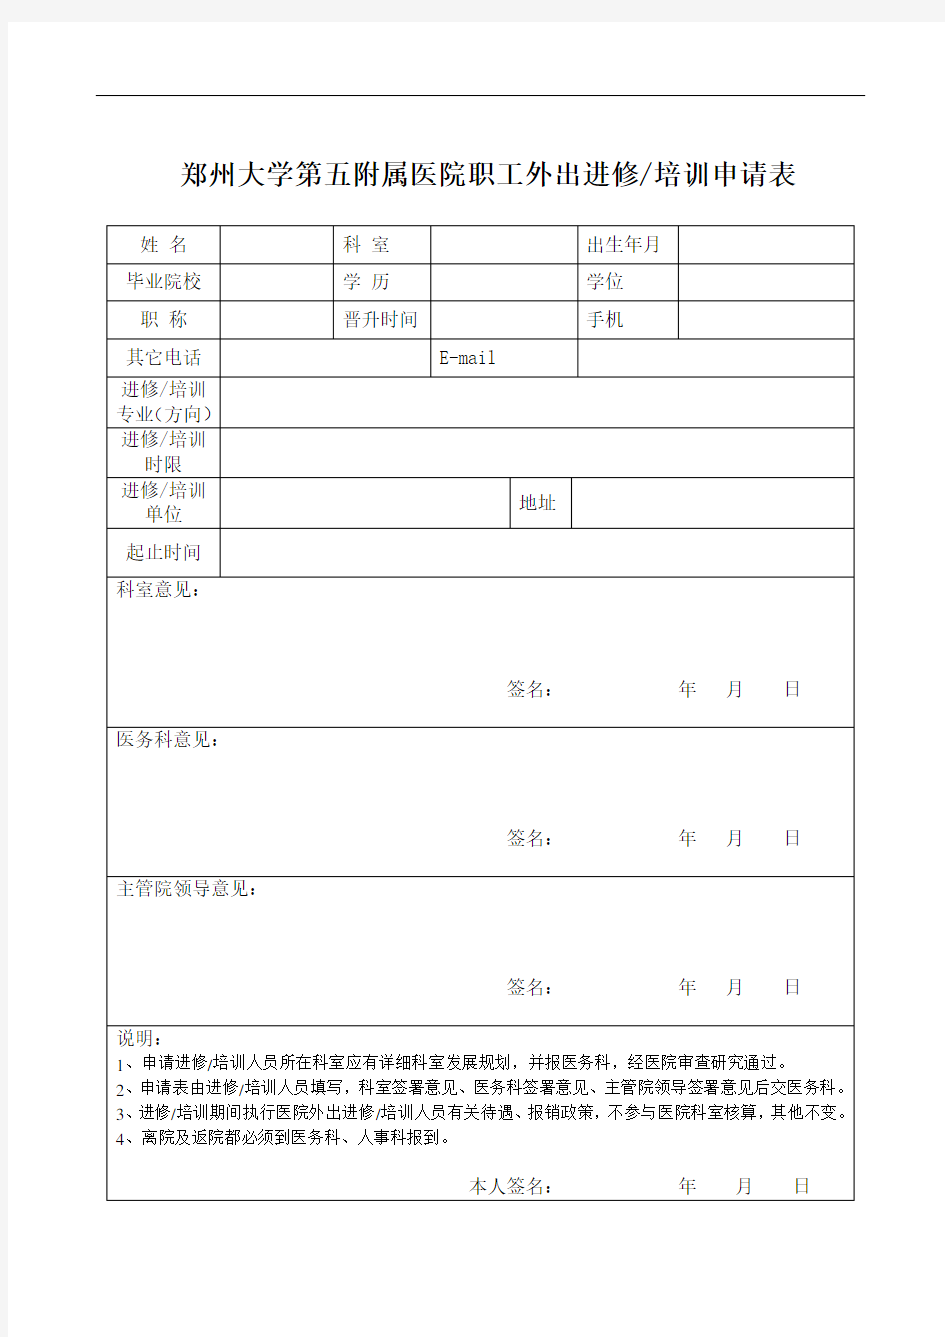 郑州大学第五附属医院职工外出进修申请表(1)